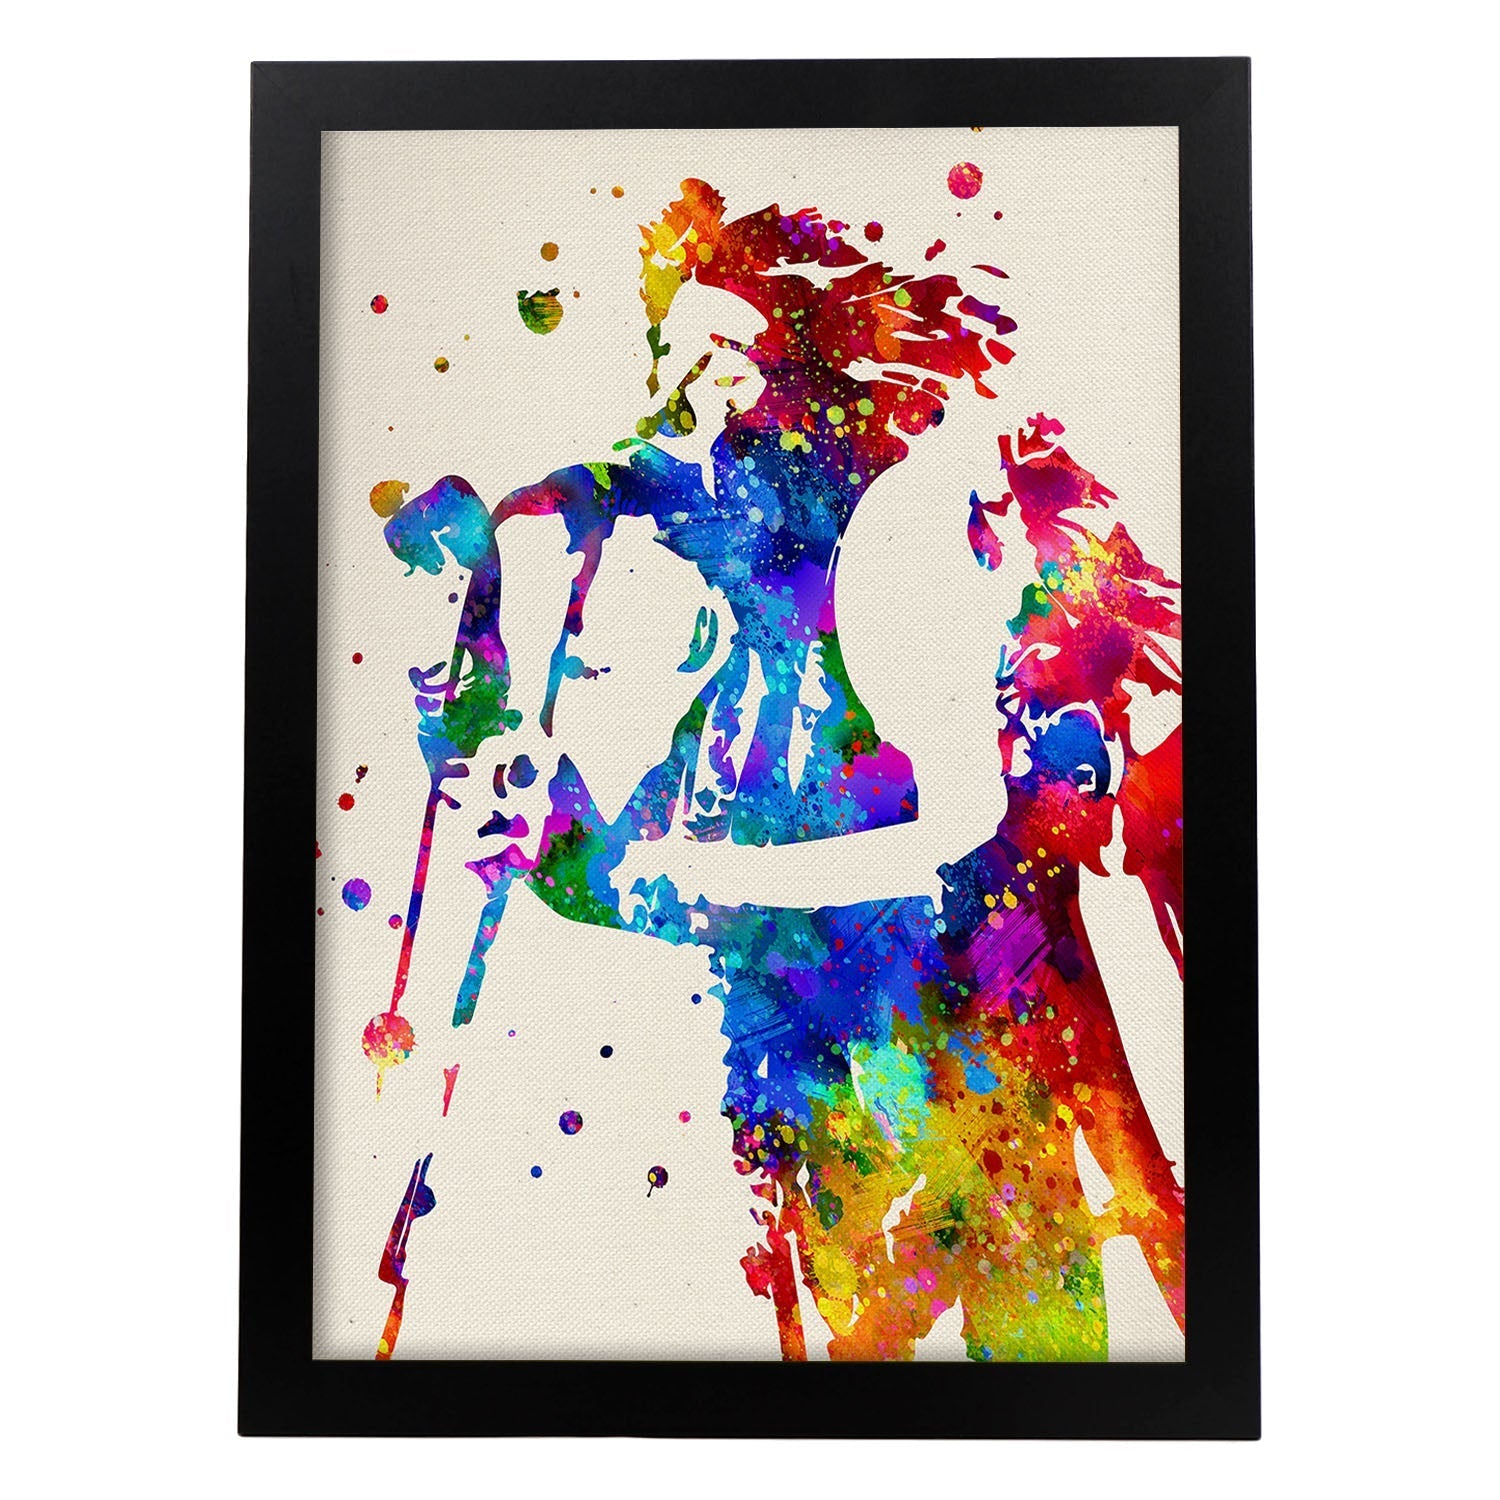 Poster imagen de Janis Joplin. Posters con diseño acuarela de famosos, actores, músicos-Artwork-Nacnic-A3-Marco Negro-Nacnic Estudio SL